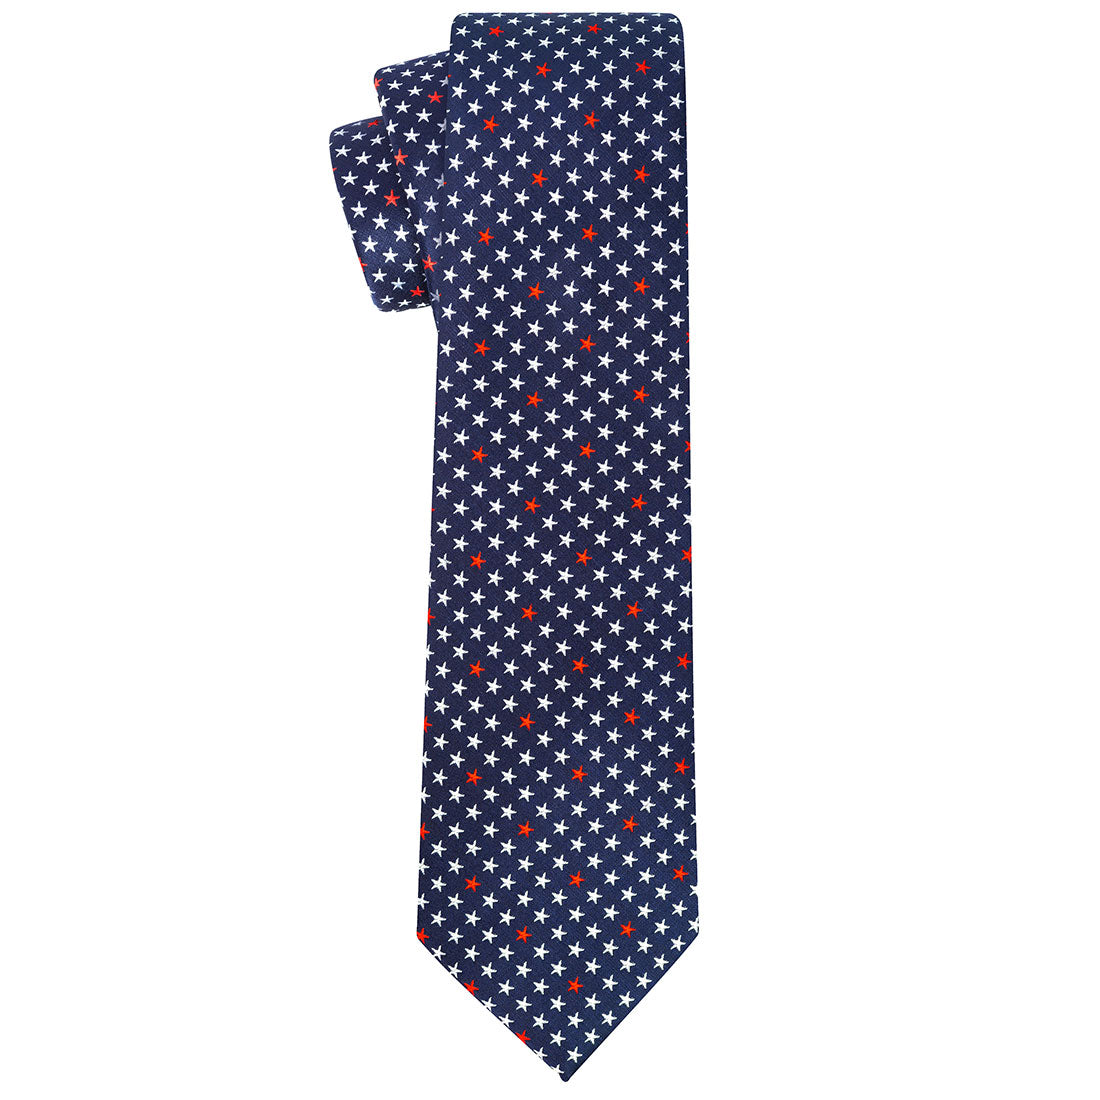 Patriot Hancock Tie, standard and extra long - Tie, bowtie, pocket square  | Kissties